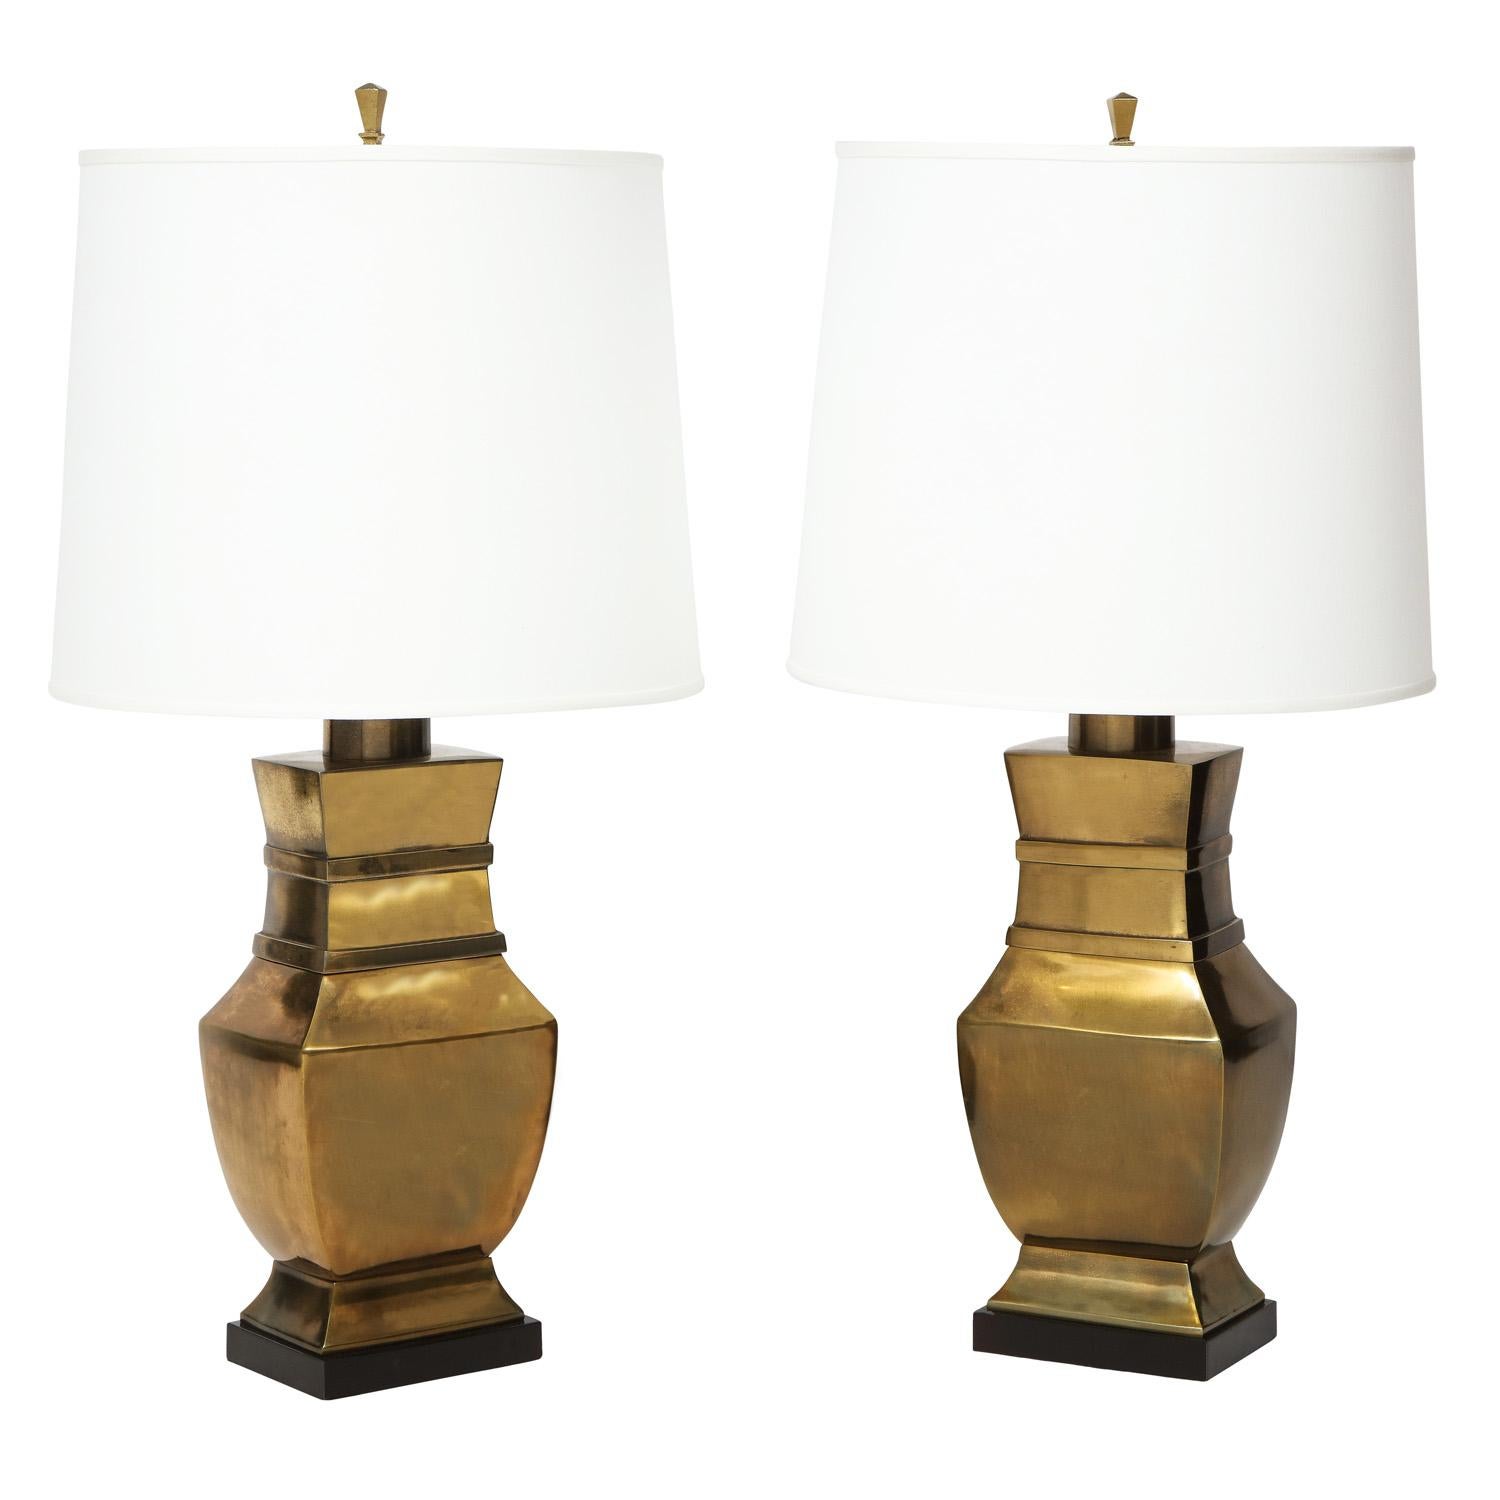 Zwei asiatisch inspirierte neoklassizistische Tischlampen aus Bronze mit ebonisierten Sockeln von Paul Hanson, USA, 1950er Jahre. Diese Lampen sind schön proportioniert und sehr elegant.

Durchmesser des Lampenschirms: 16 Zoll
Höhe des Schirms: